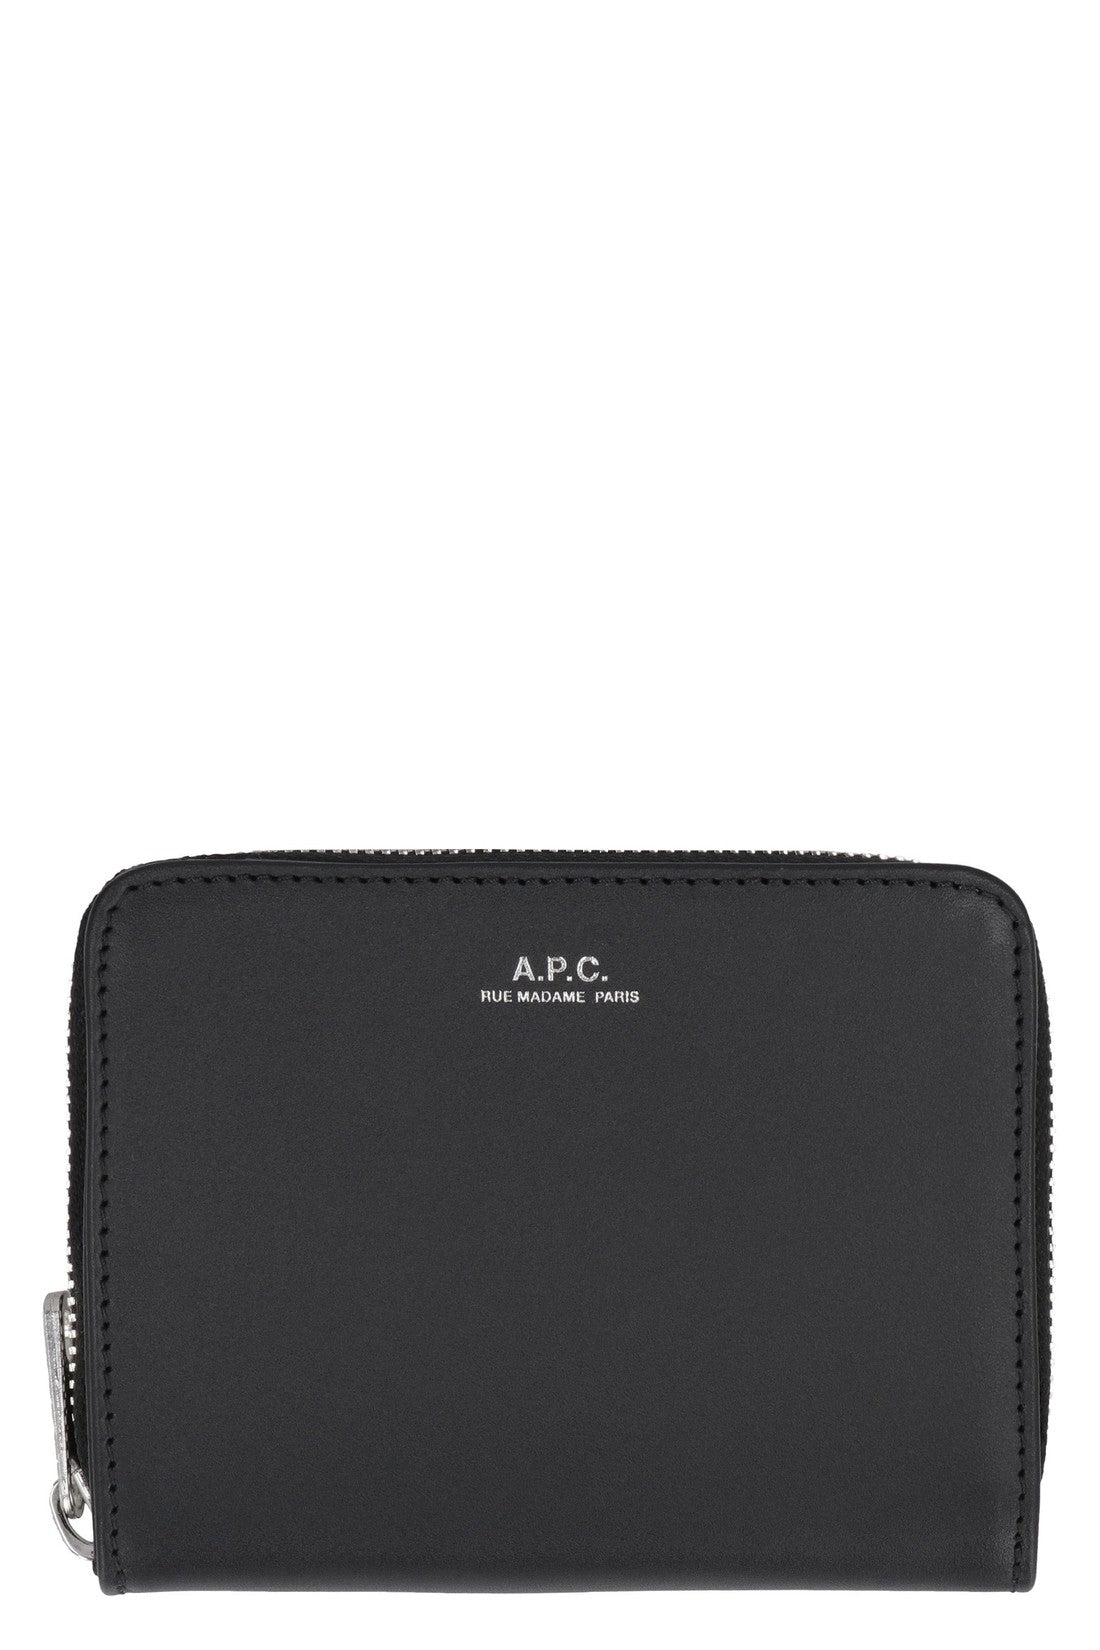 A.P.C.-OUTLET-SALE-Emmanuel leather wallet-ARCHIVIST